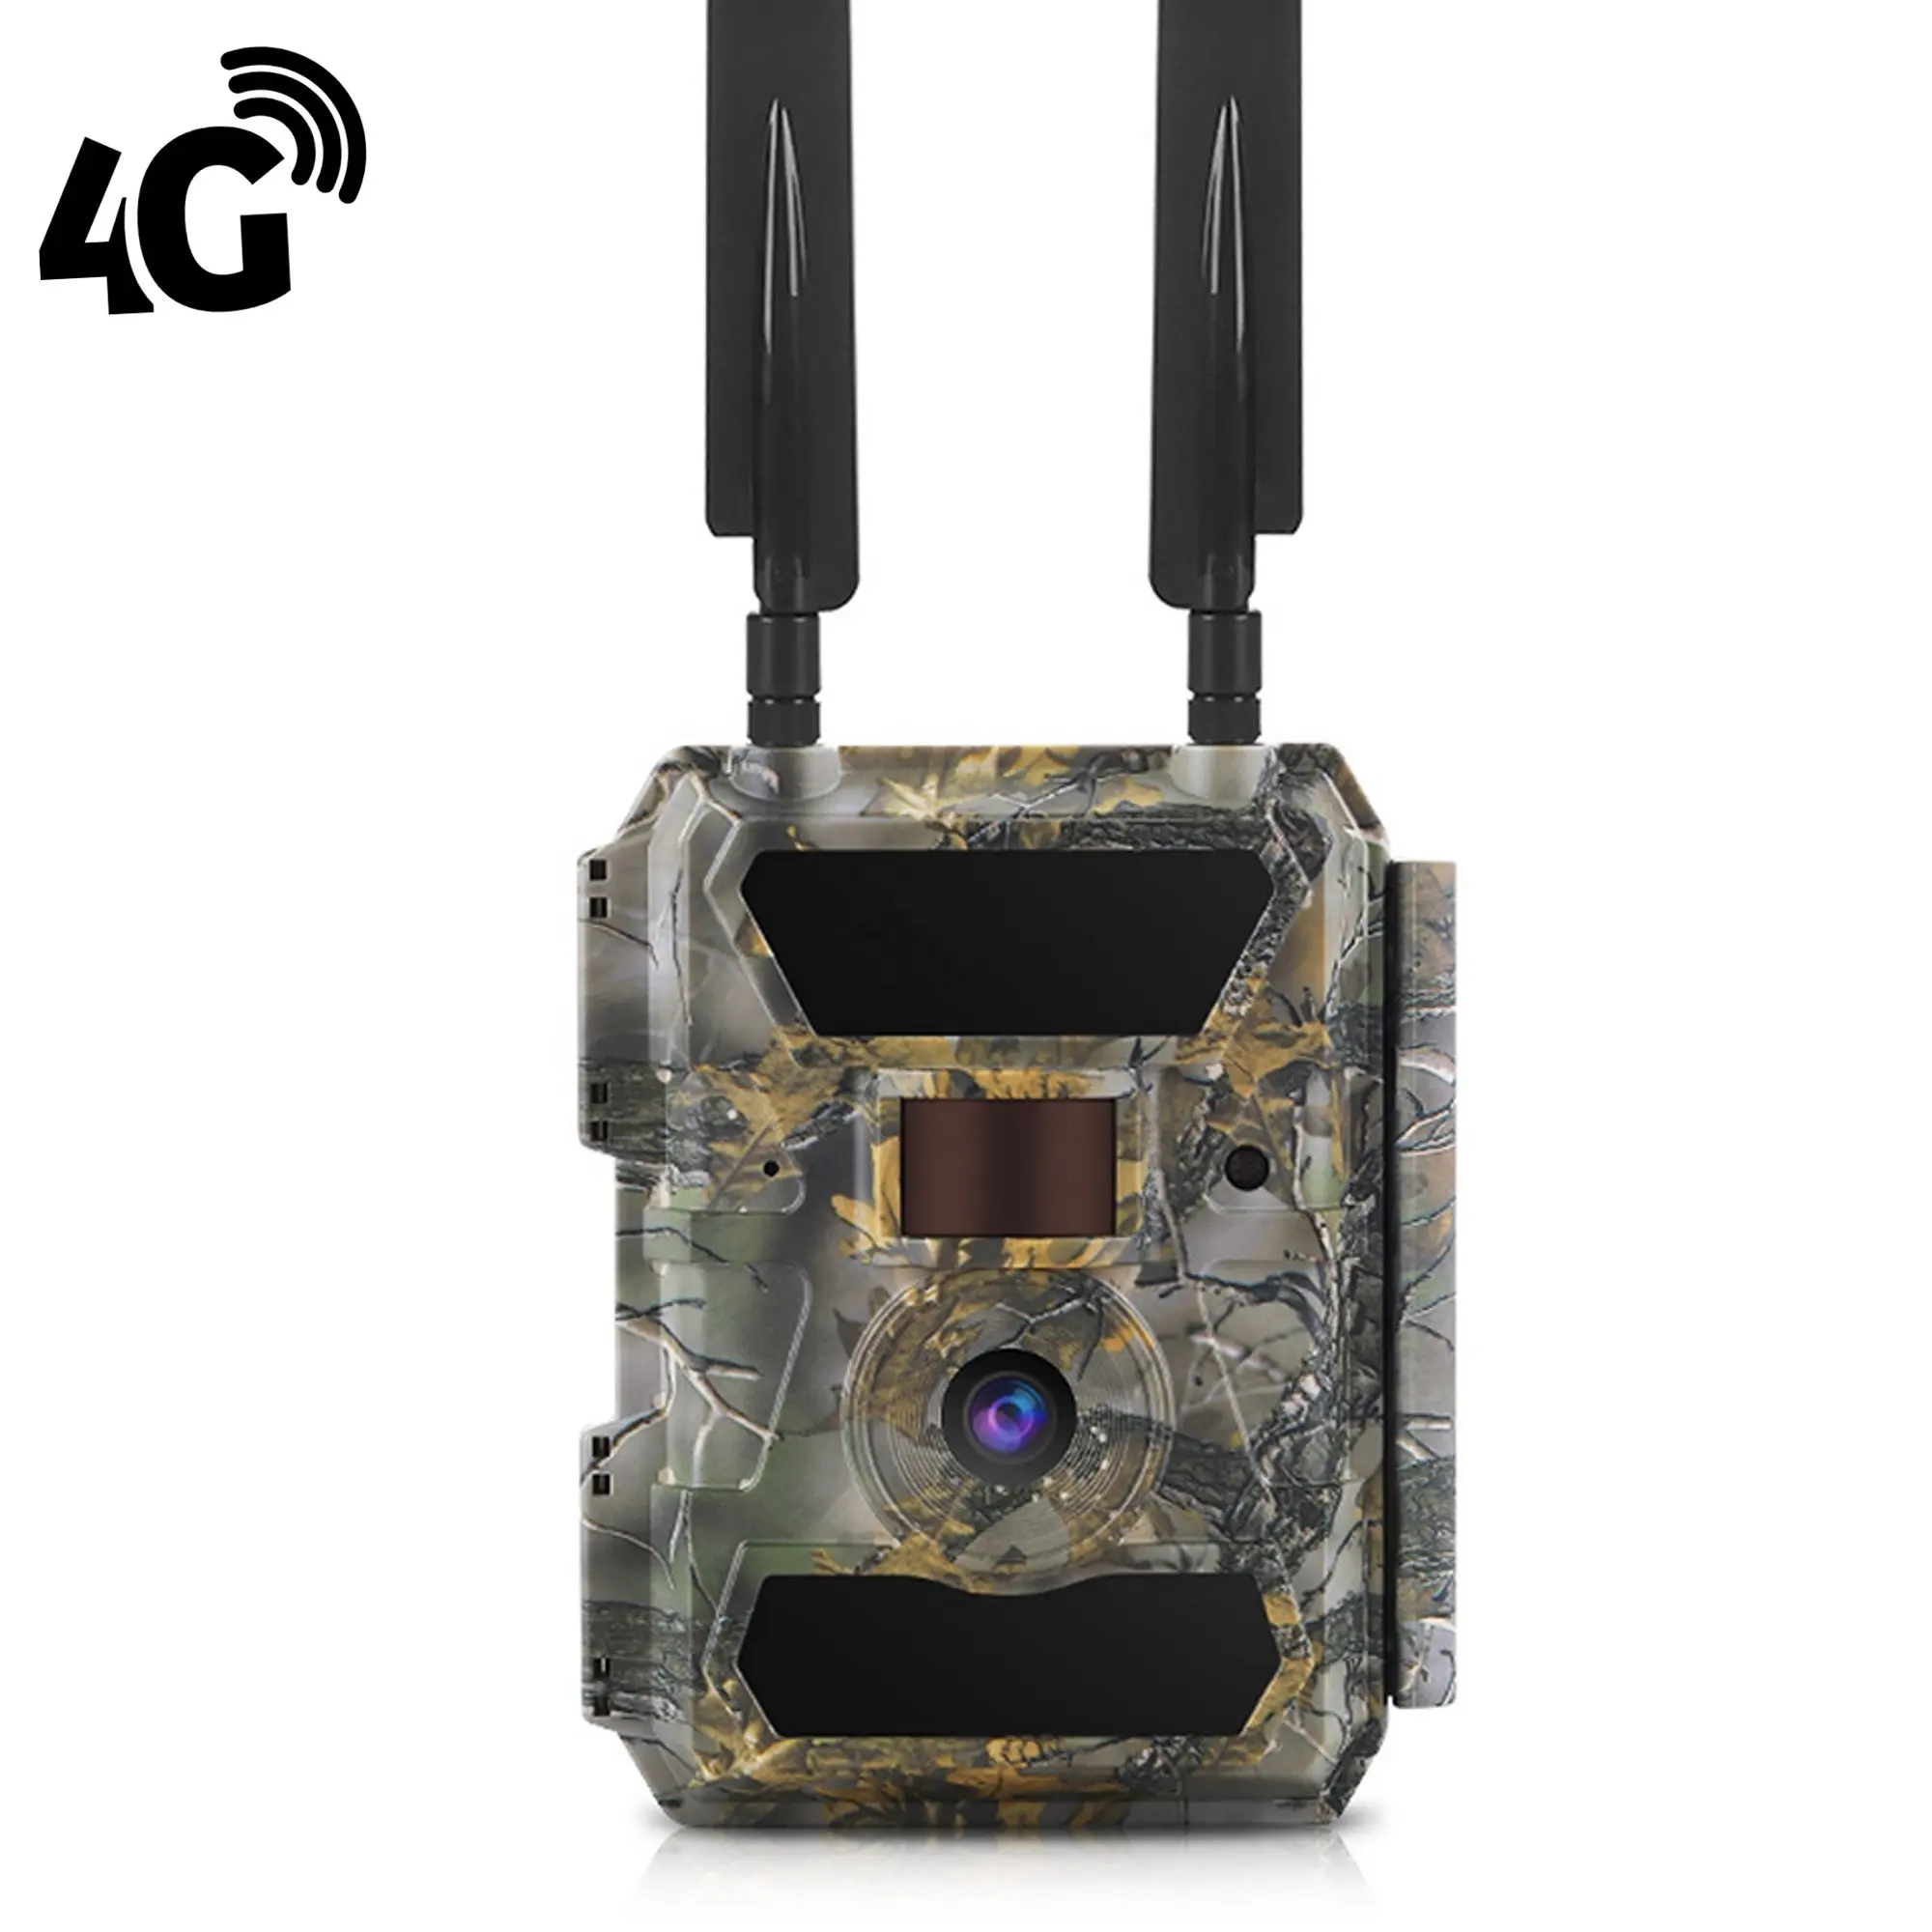 Telecamera per trappola 4G per visione notturna a infrarossi Wireless per attività di caccia selvaggia